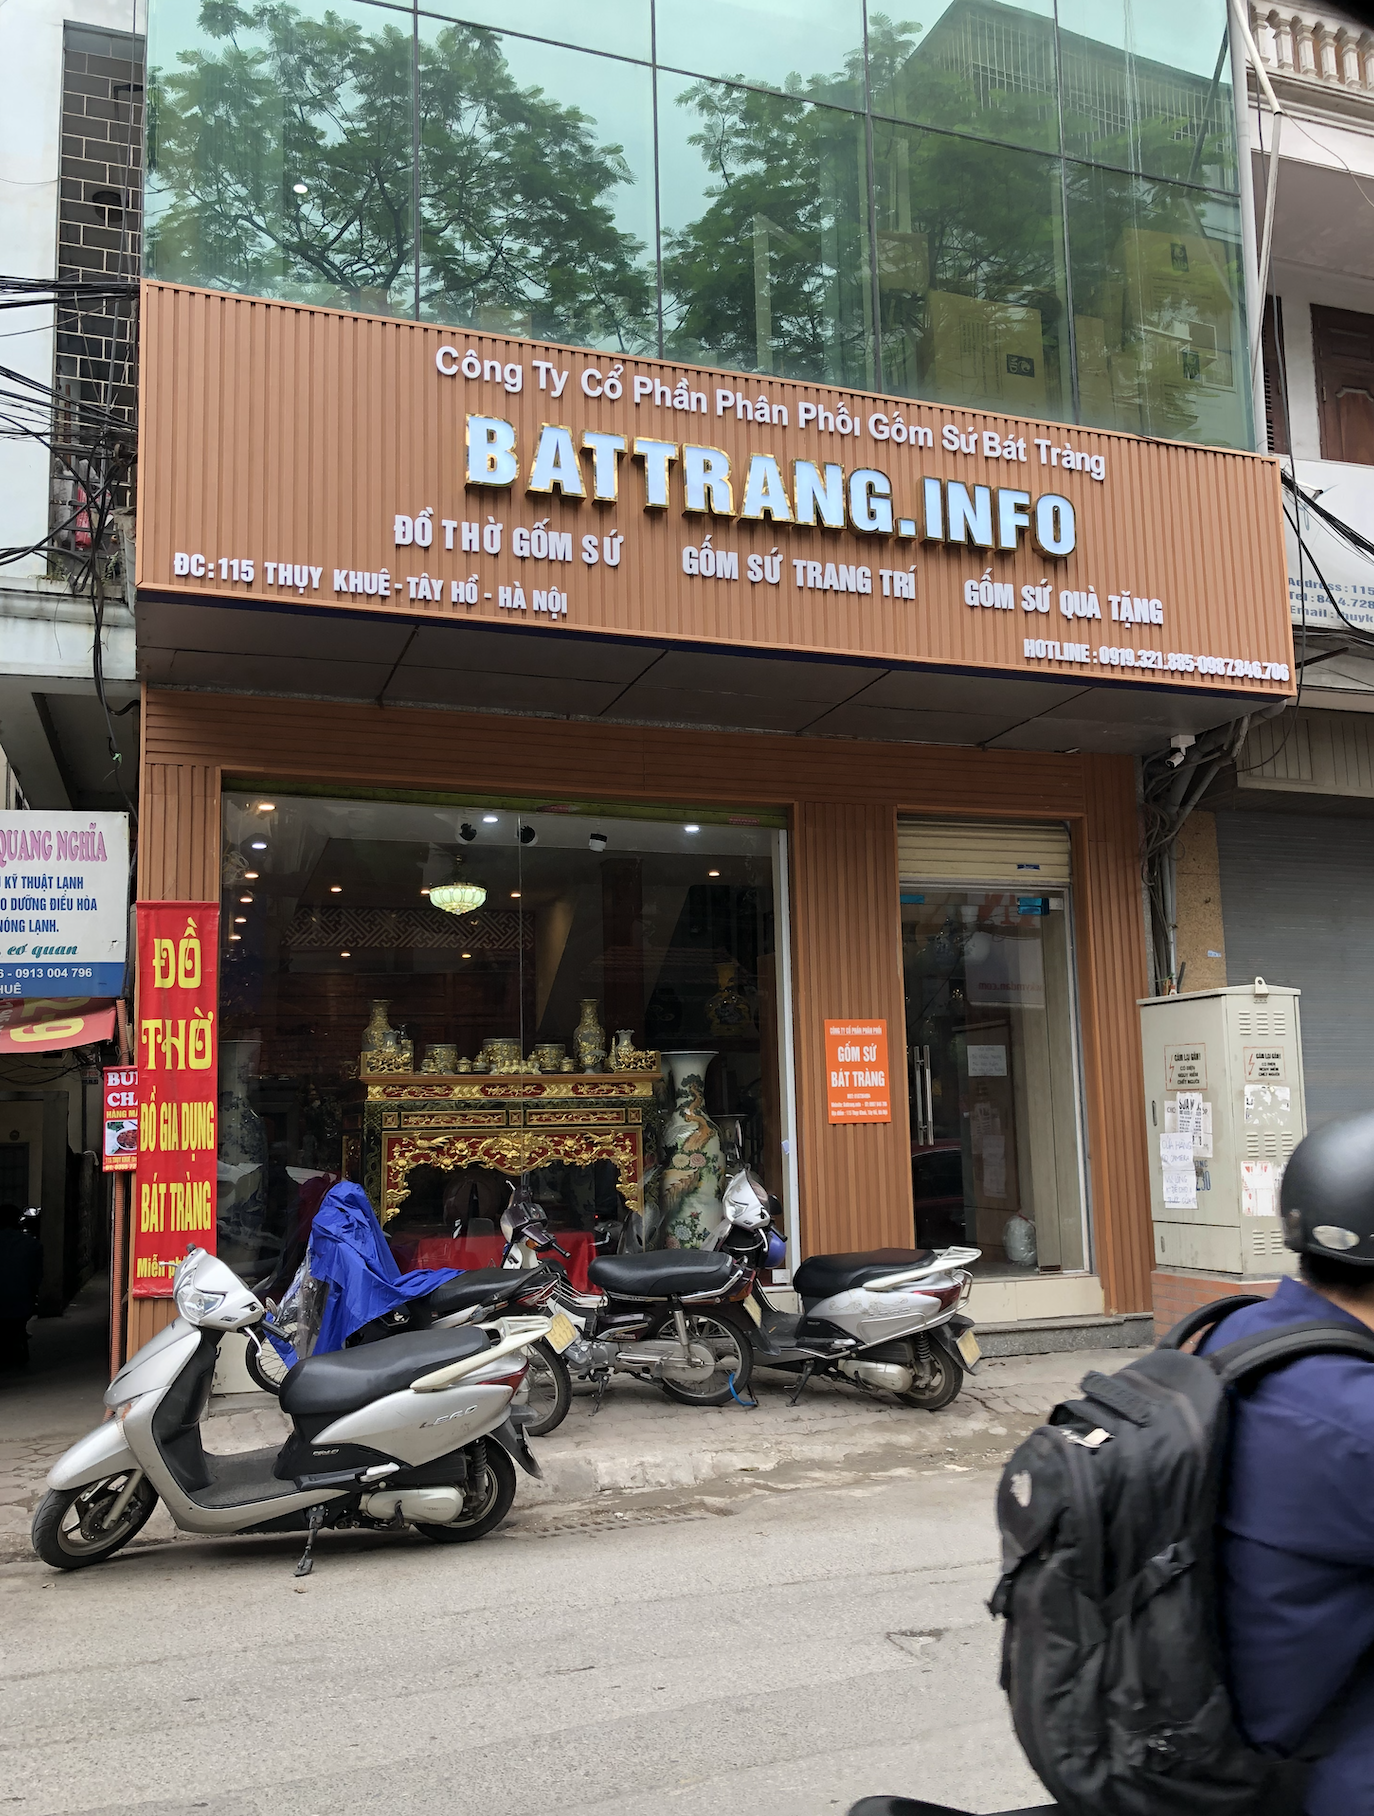 Cửa hàng gốm sứ Battrang.info số 115 Thụy Khuê, Tây Hồ, Hà Nội